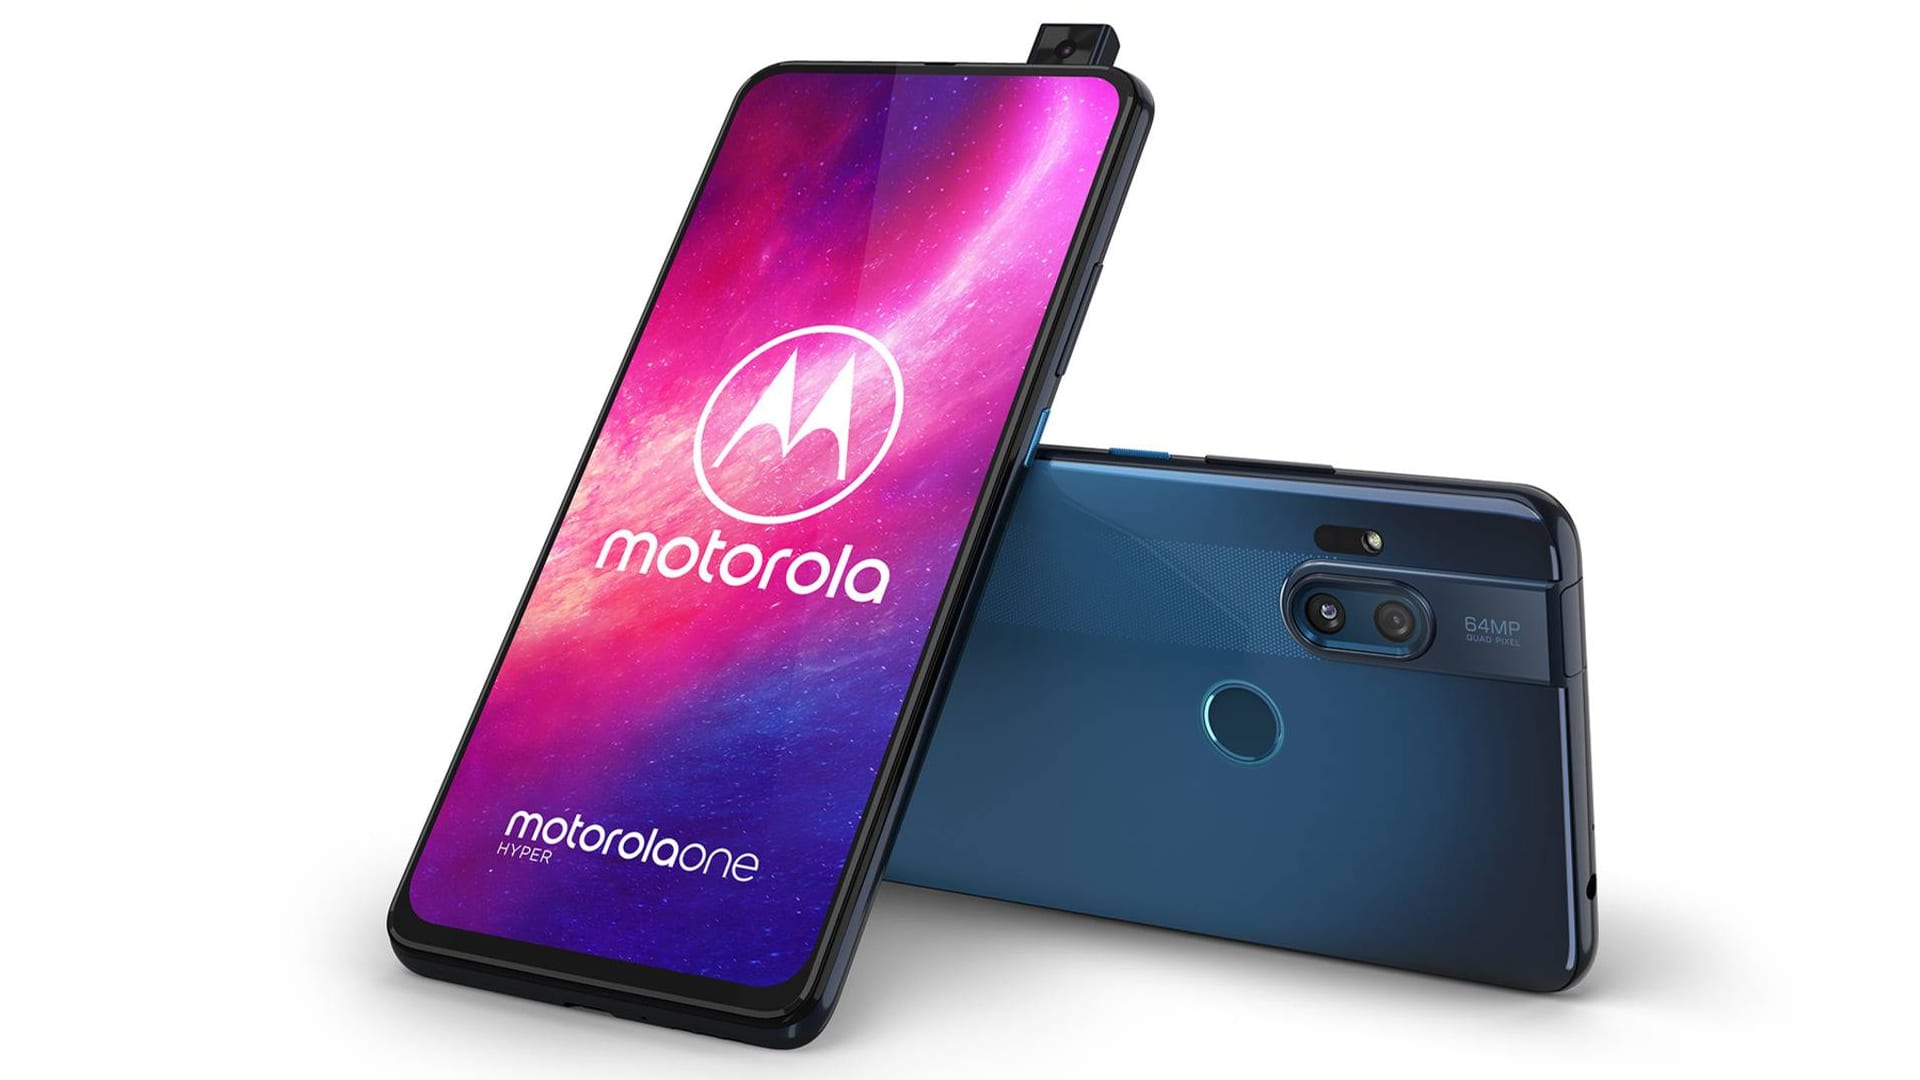 شركة Motorola تطلق هاتفها الجديد One Hyper بنظام Android 10 وبسعر 399 دولار